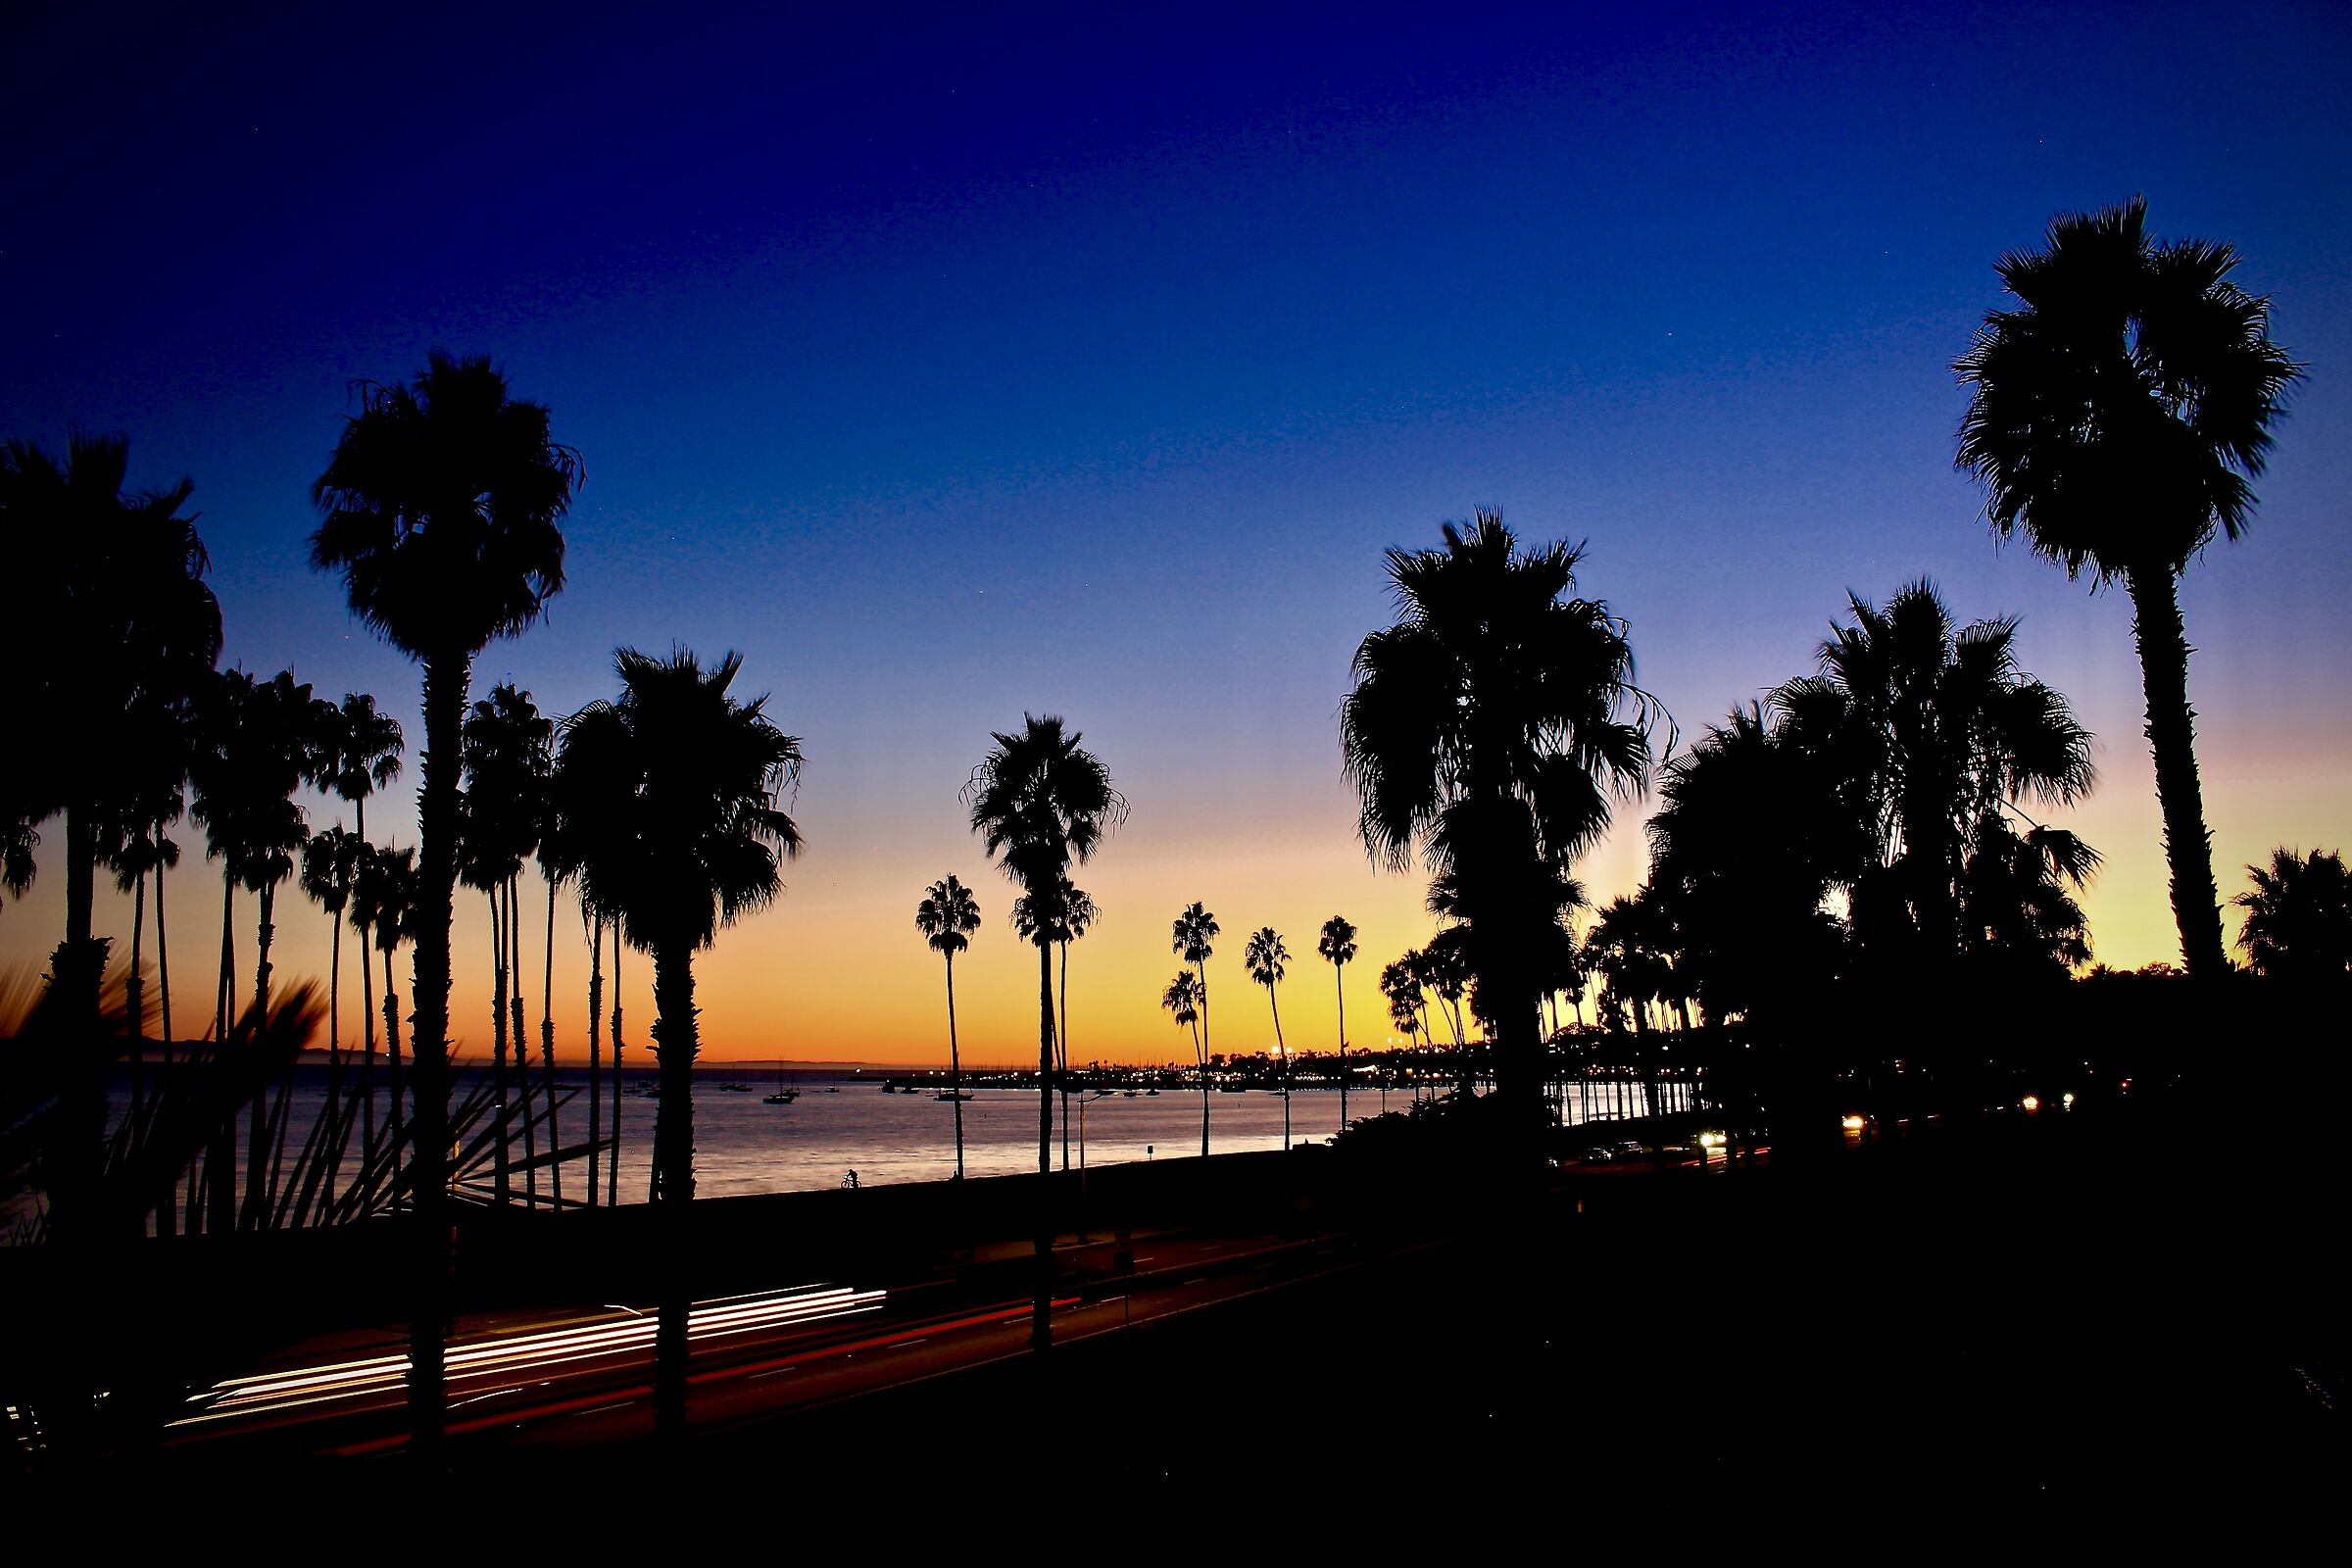 Santa Barbara in the night...